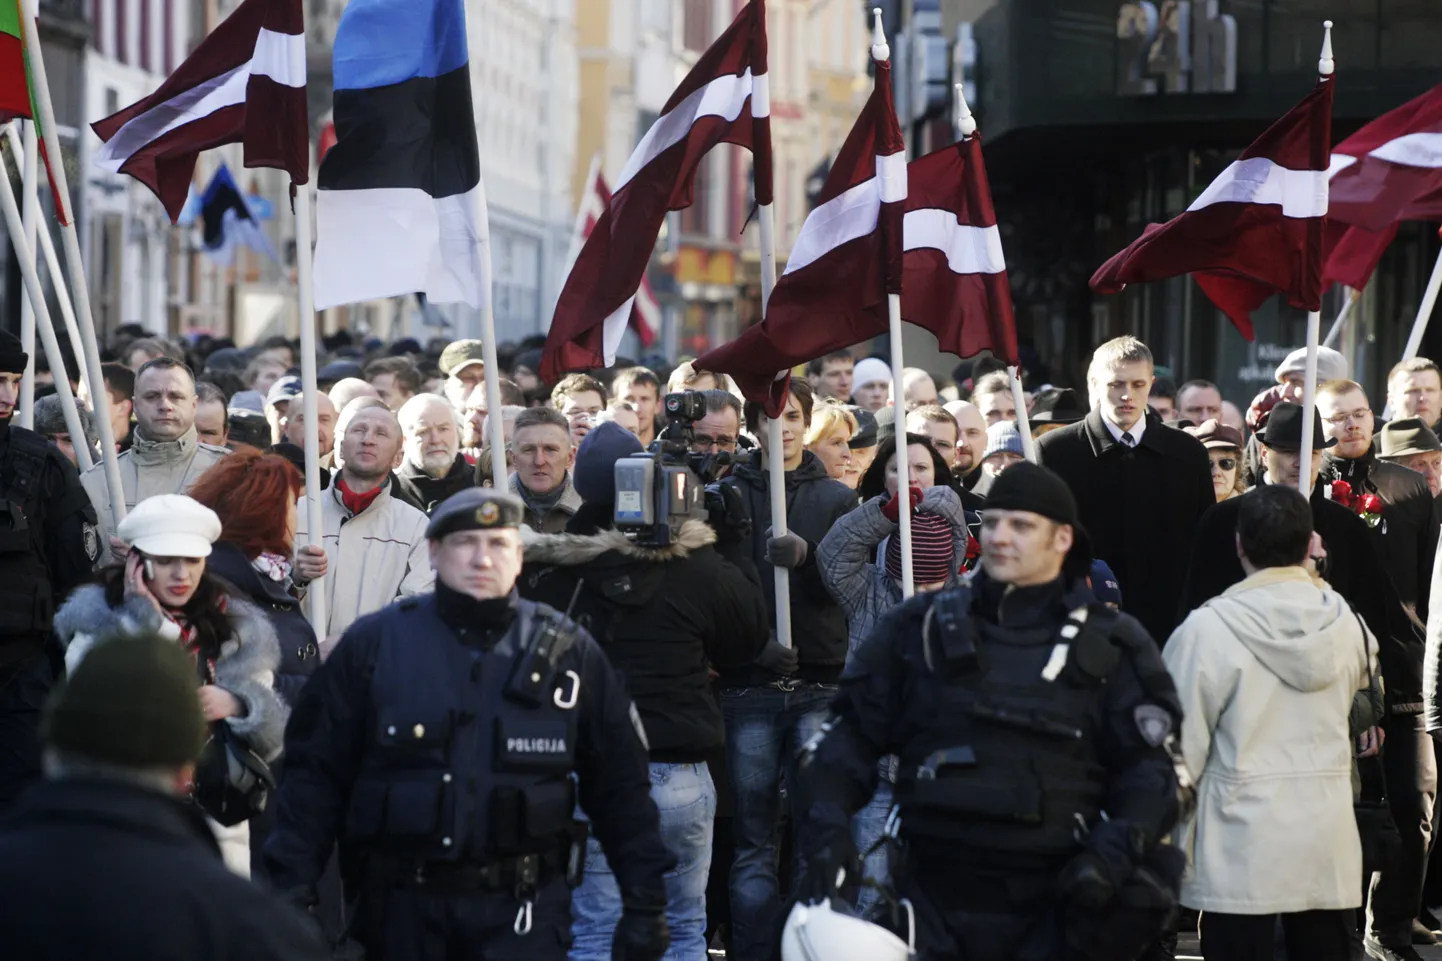 Сторонники легионеров во время шествия в Риге 6 марта 2011 года